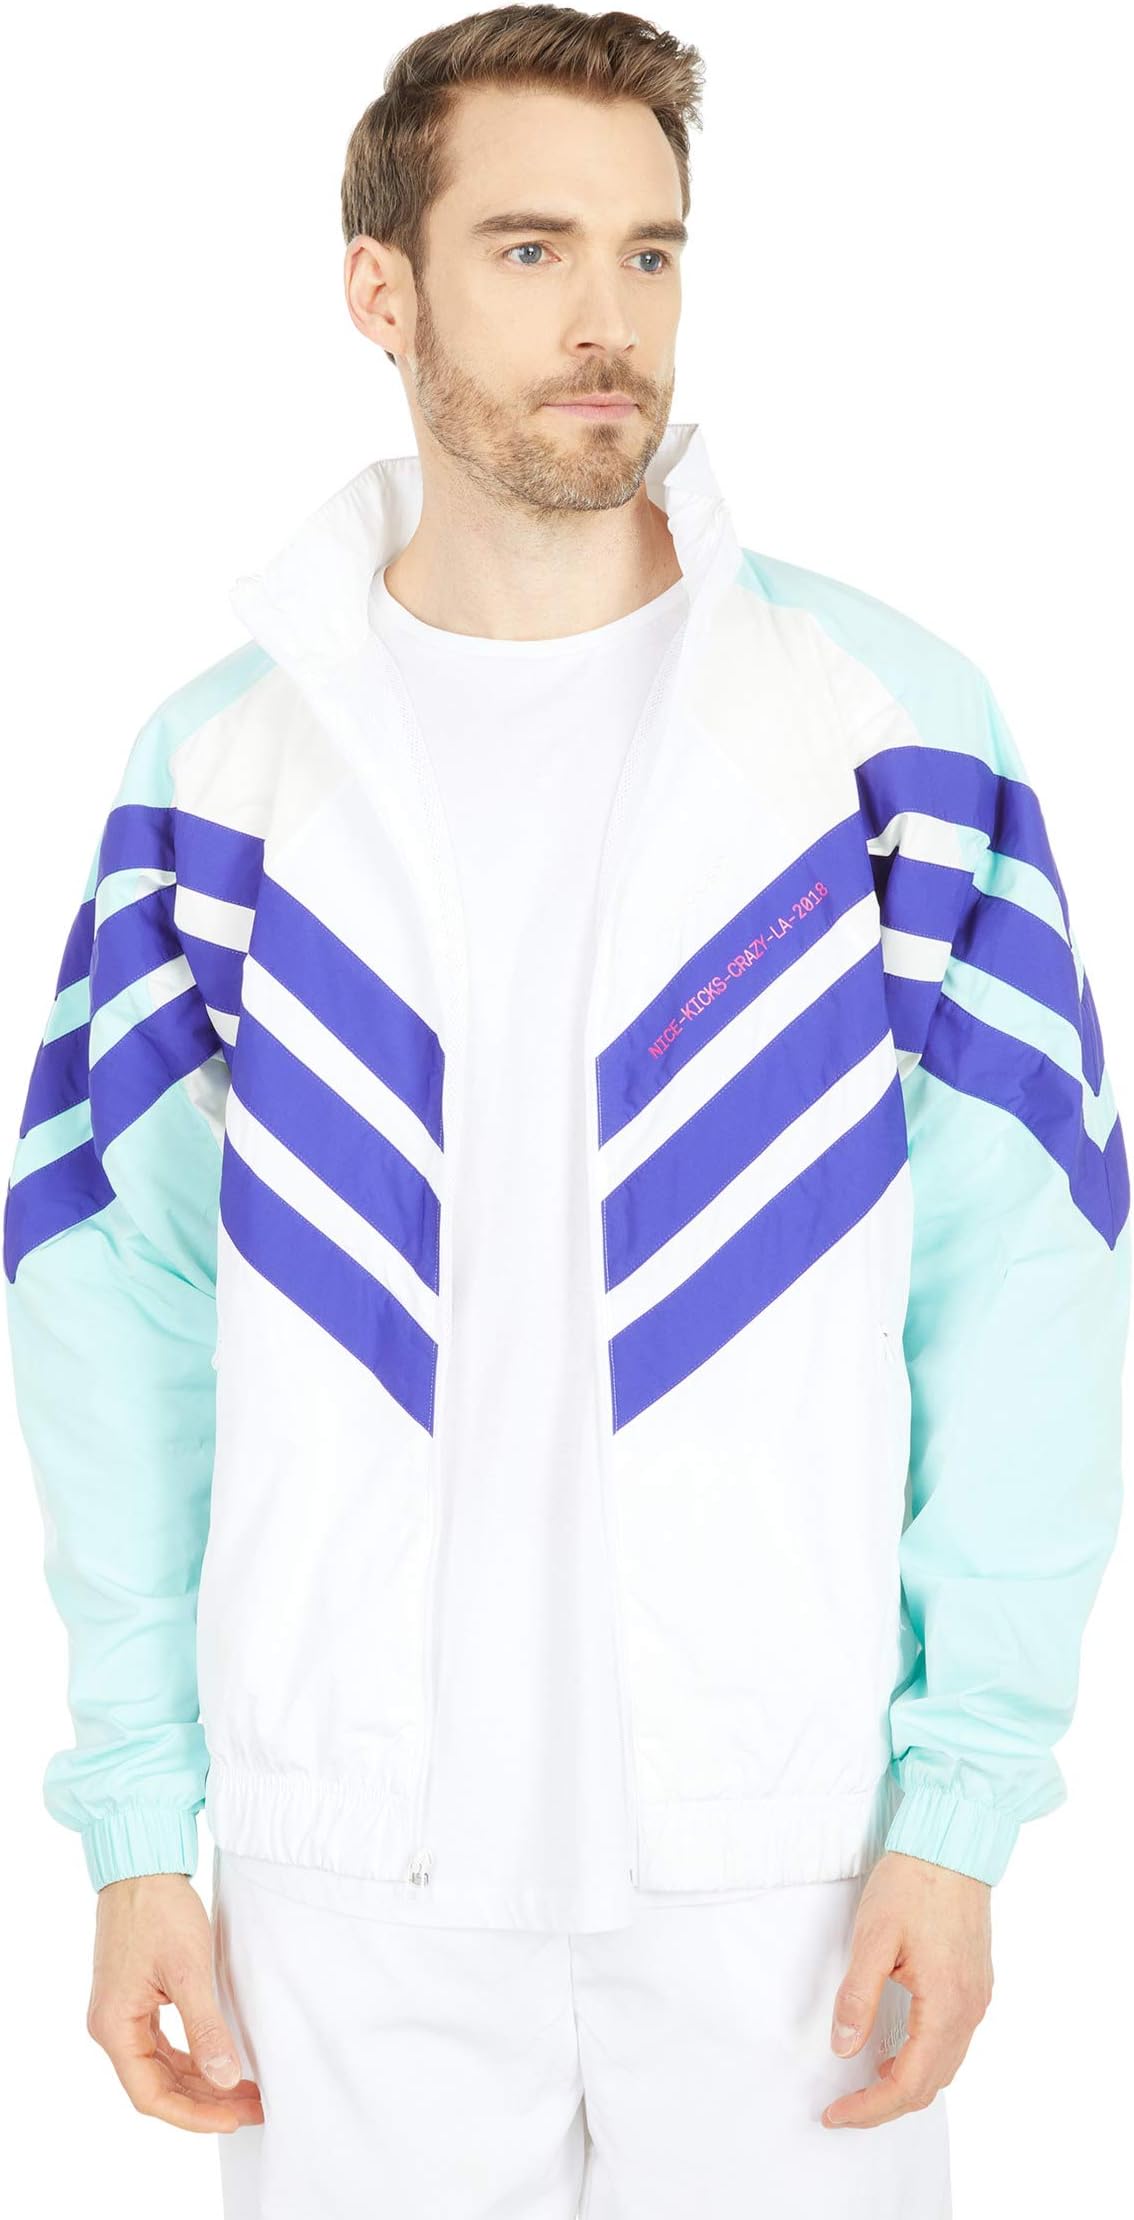 Куртка Tironti Track Top Ltd adidas, цвет White/Energy Aqua/Energy Ink цена и фото